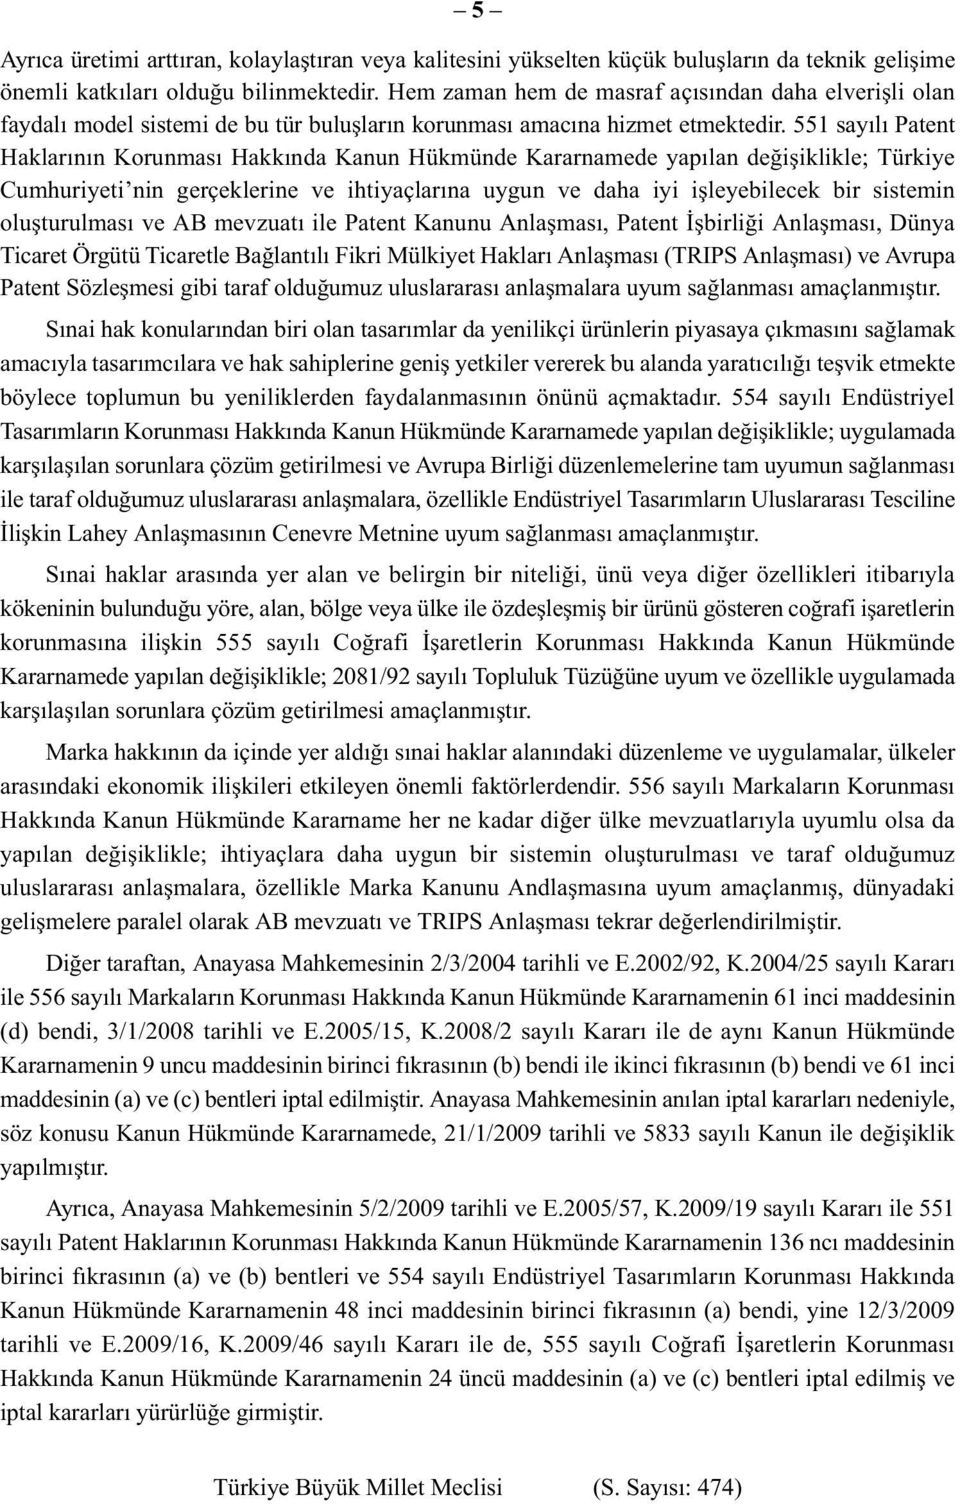 551 sayılı Patent Haklarının Korunması Hakkında Kanun Hükmünde Kararnamede yapılan değişiklikle; Türkiye Cumhuriyeti nin gerçeklerine ve ihtiyaçlarına uygun ve daha iyi işleyebilecek bir sistemin